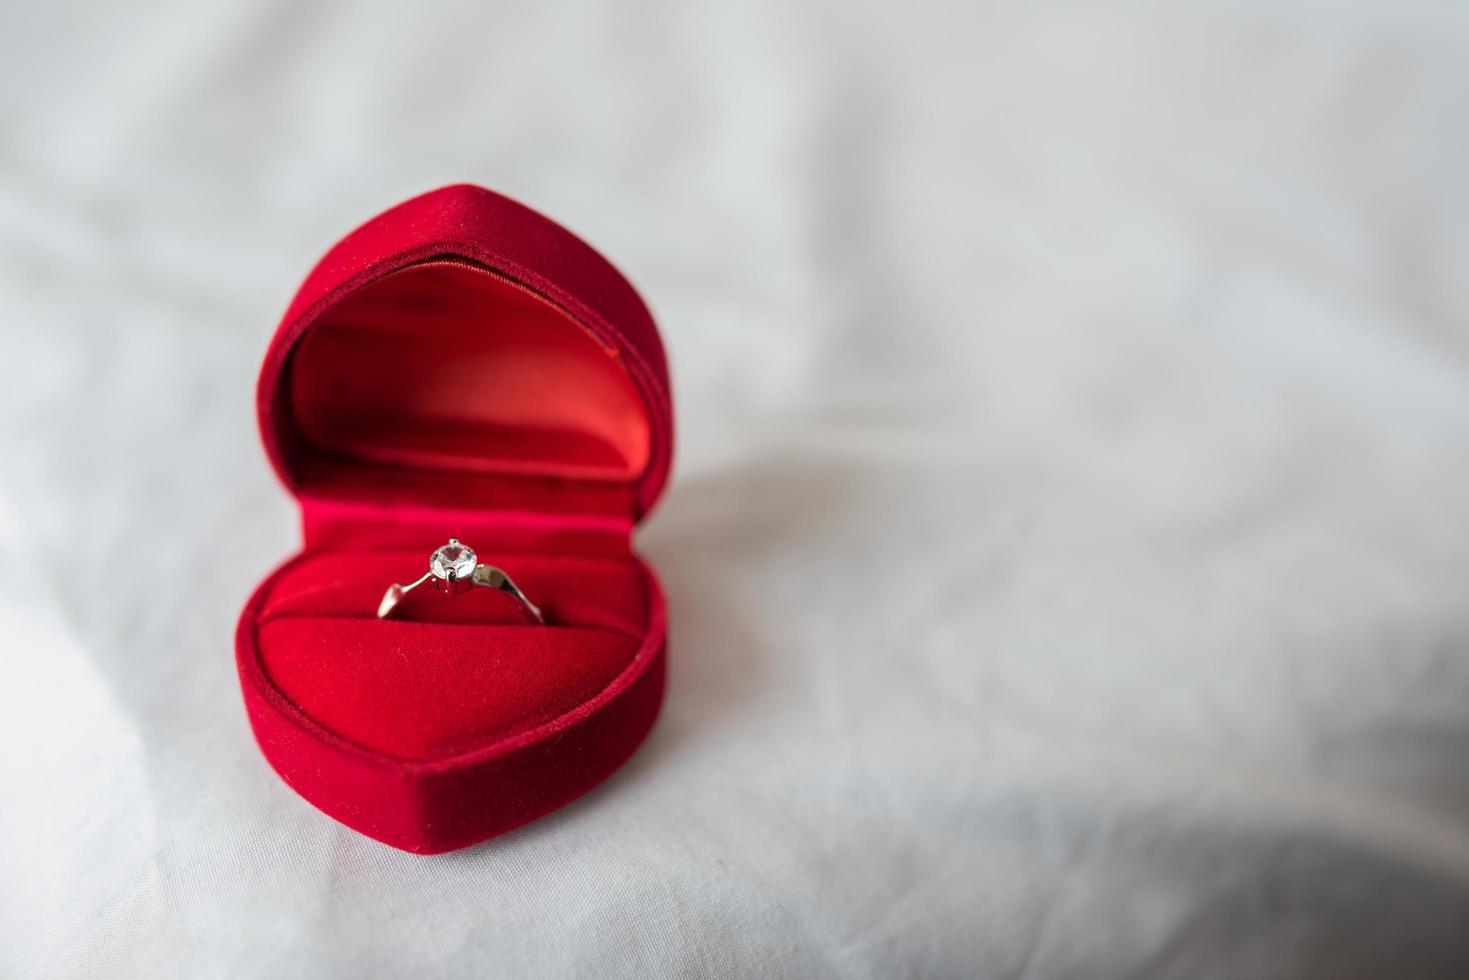 anillo de bodas en una caja en la cama foto